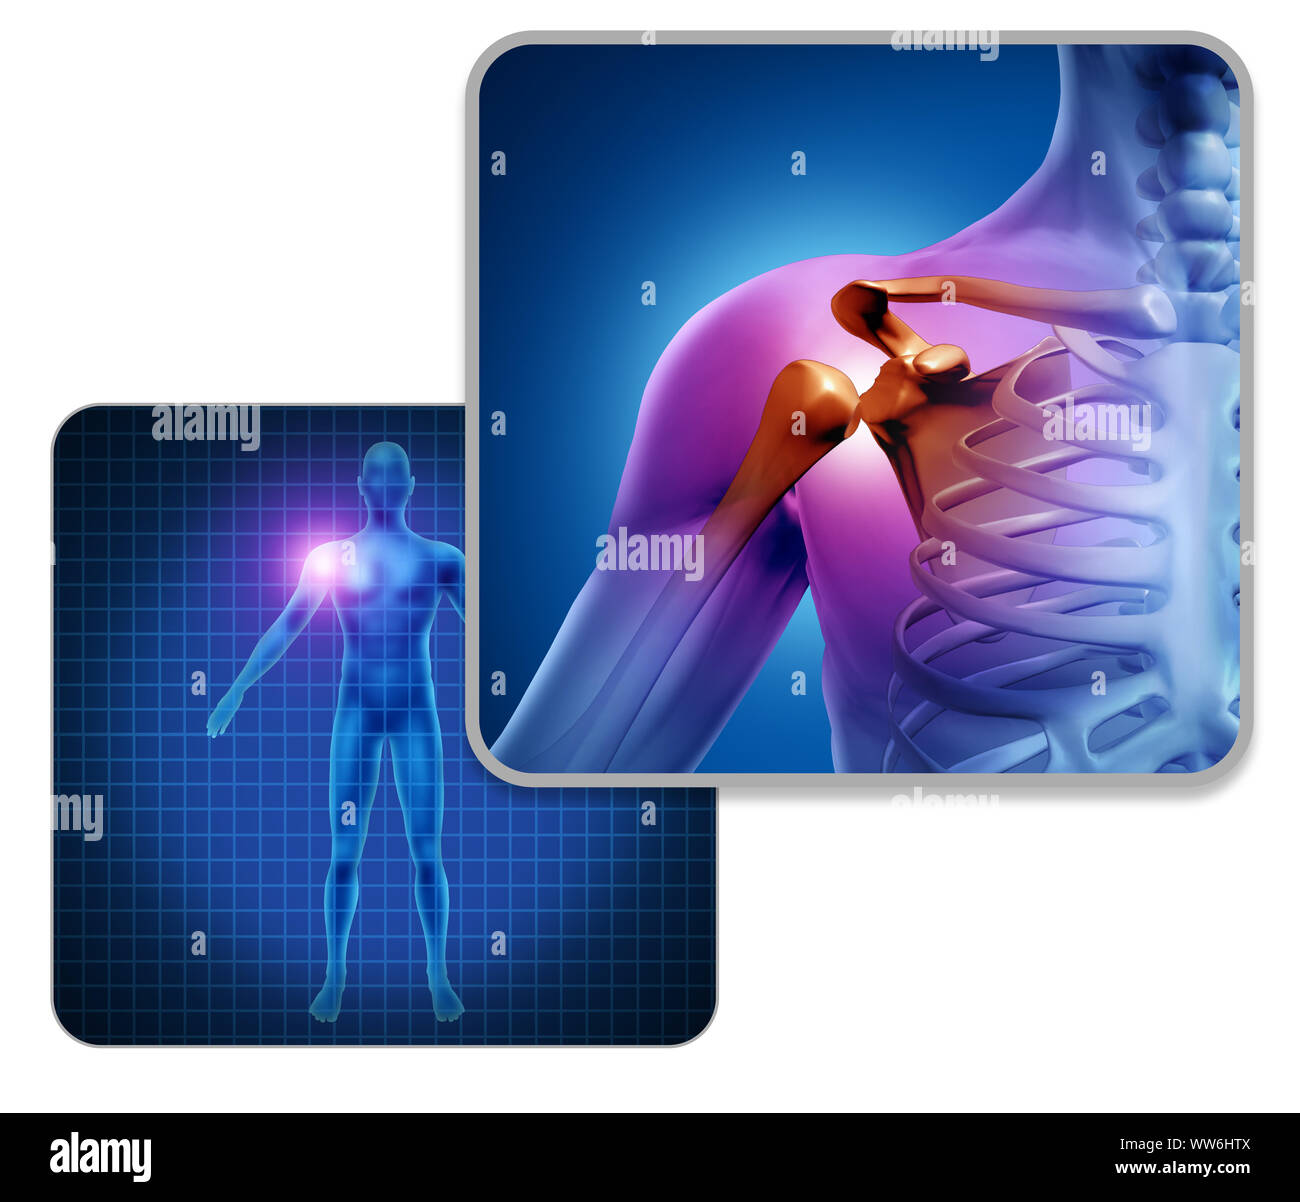 Menschliche Schultergelenk schmerzen Konzept als Skelett und Muskel Anatomie des Körpers mit Halsschmerzen Entzündung als eine schmerzhafte Verletzung oder Arthritis Krankheit Symbol. Stockfoto